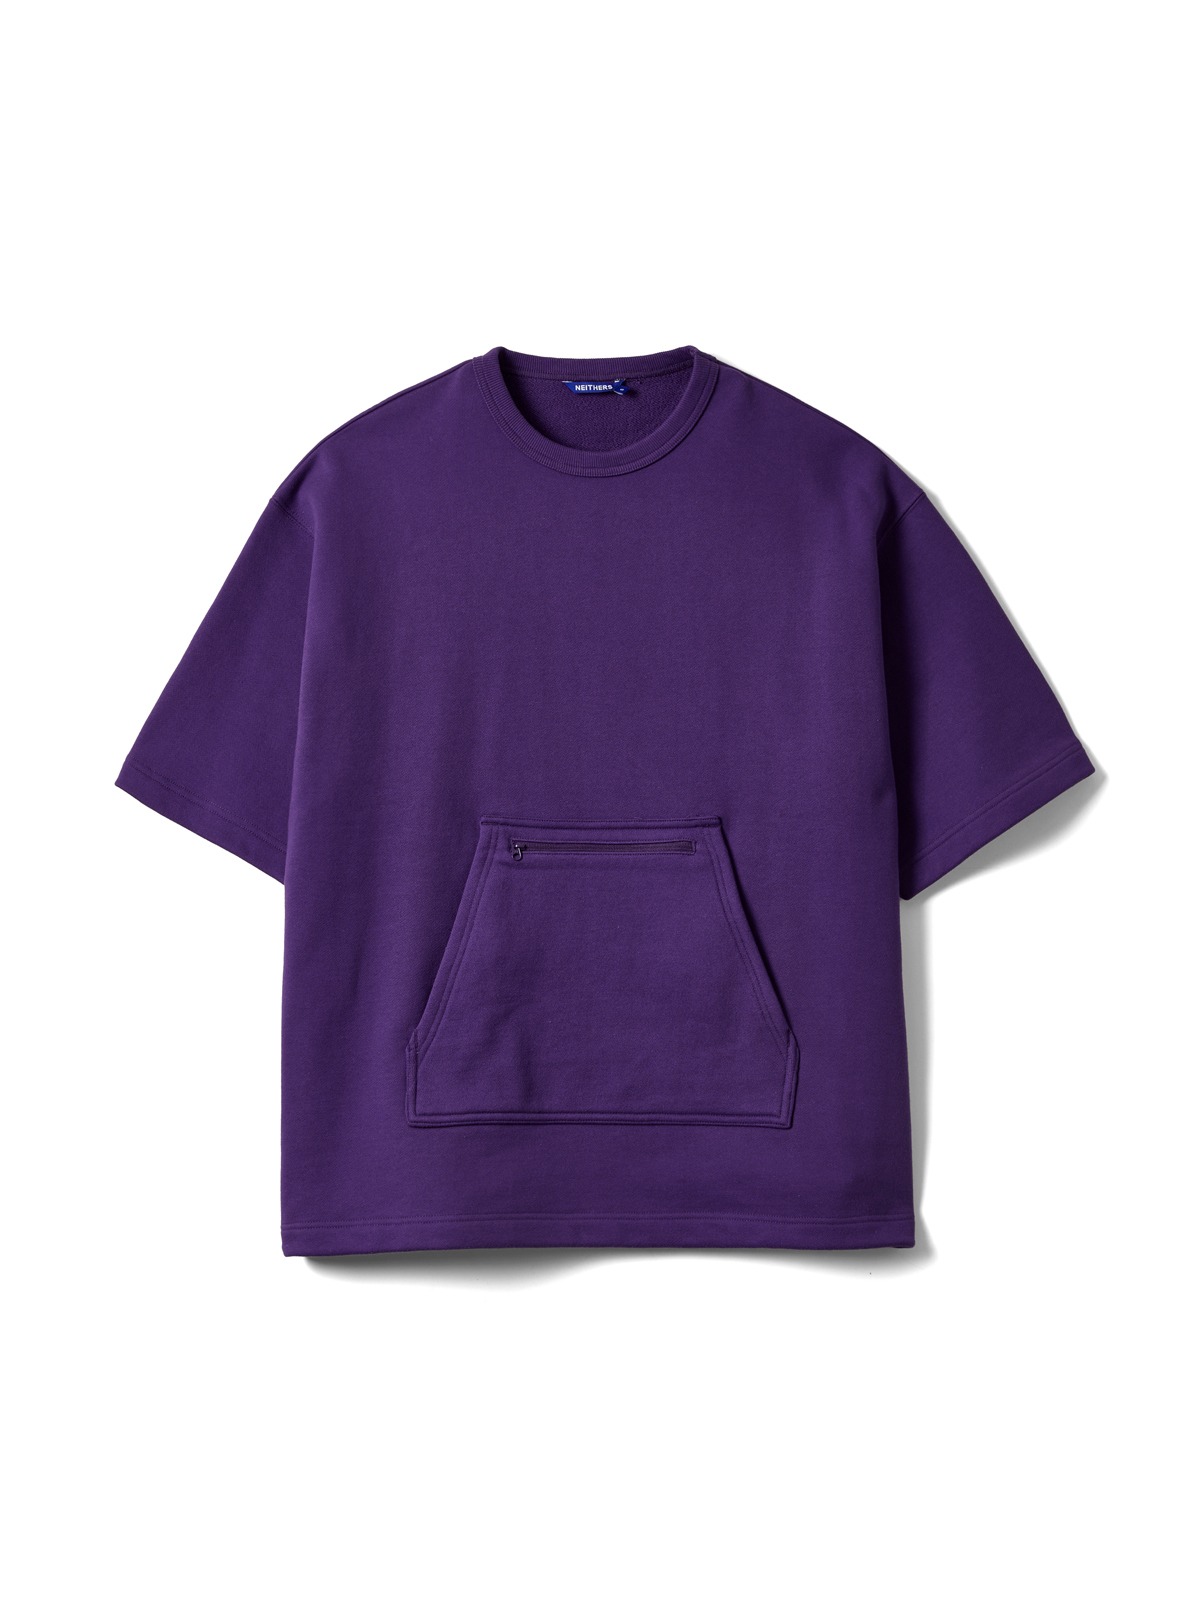 Newsboy Utility S/S Sweatshirt (Purple)